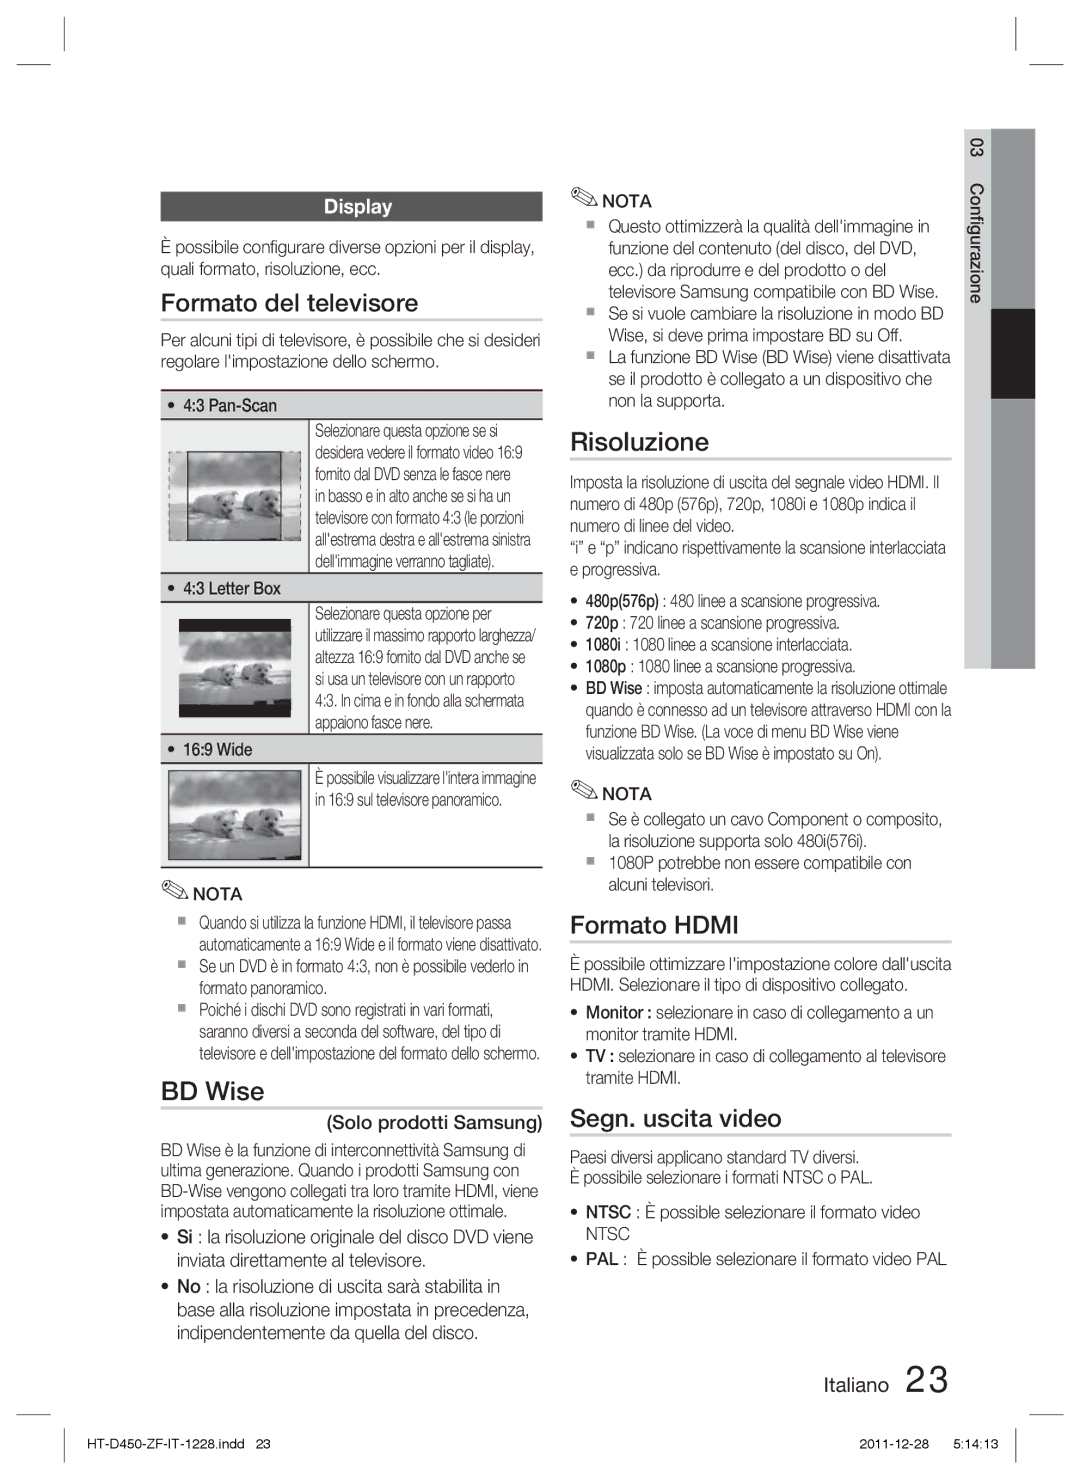 Samsung HT-D455/ZF manual Formato del televisore, Risoluzione, Formato Hdmi, Segn. uscita video, Display 